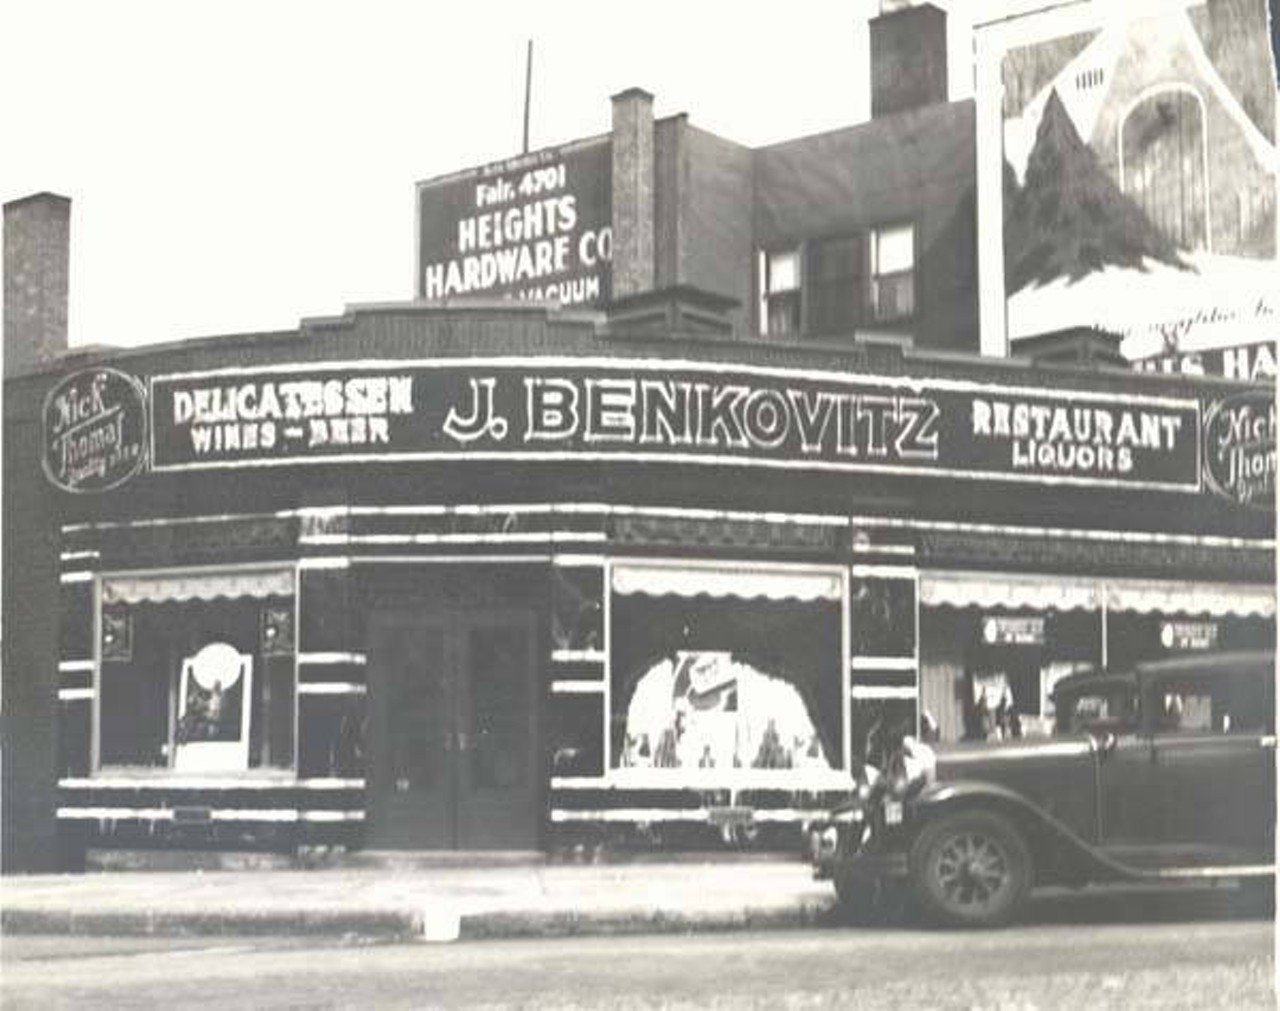  J. Benkovitz Restaurant, 1938 